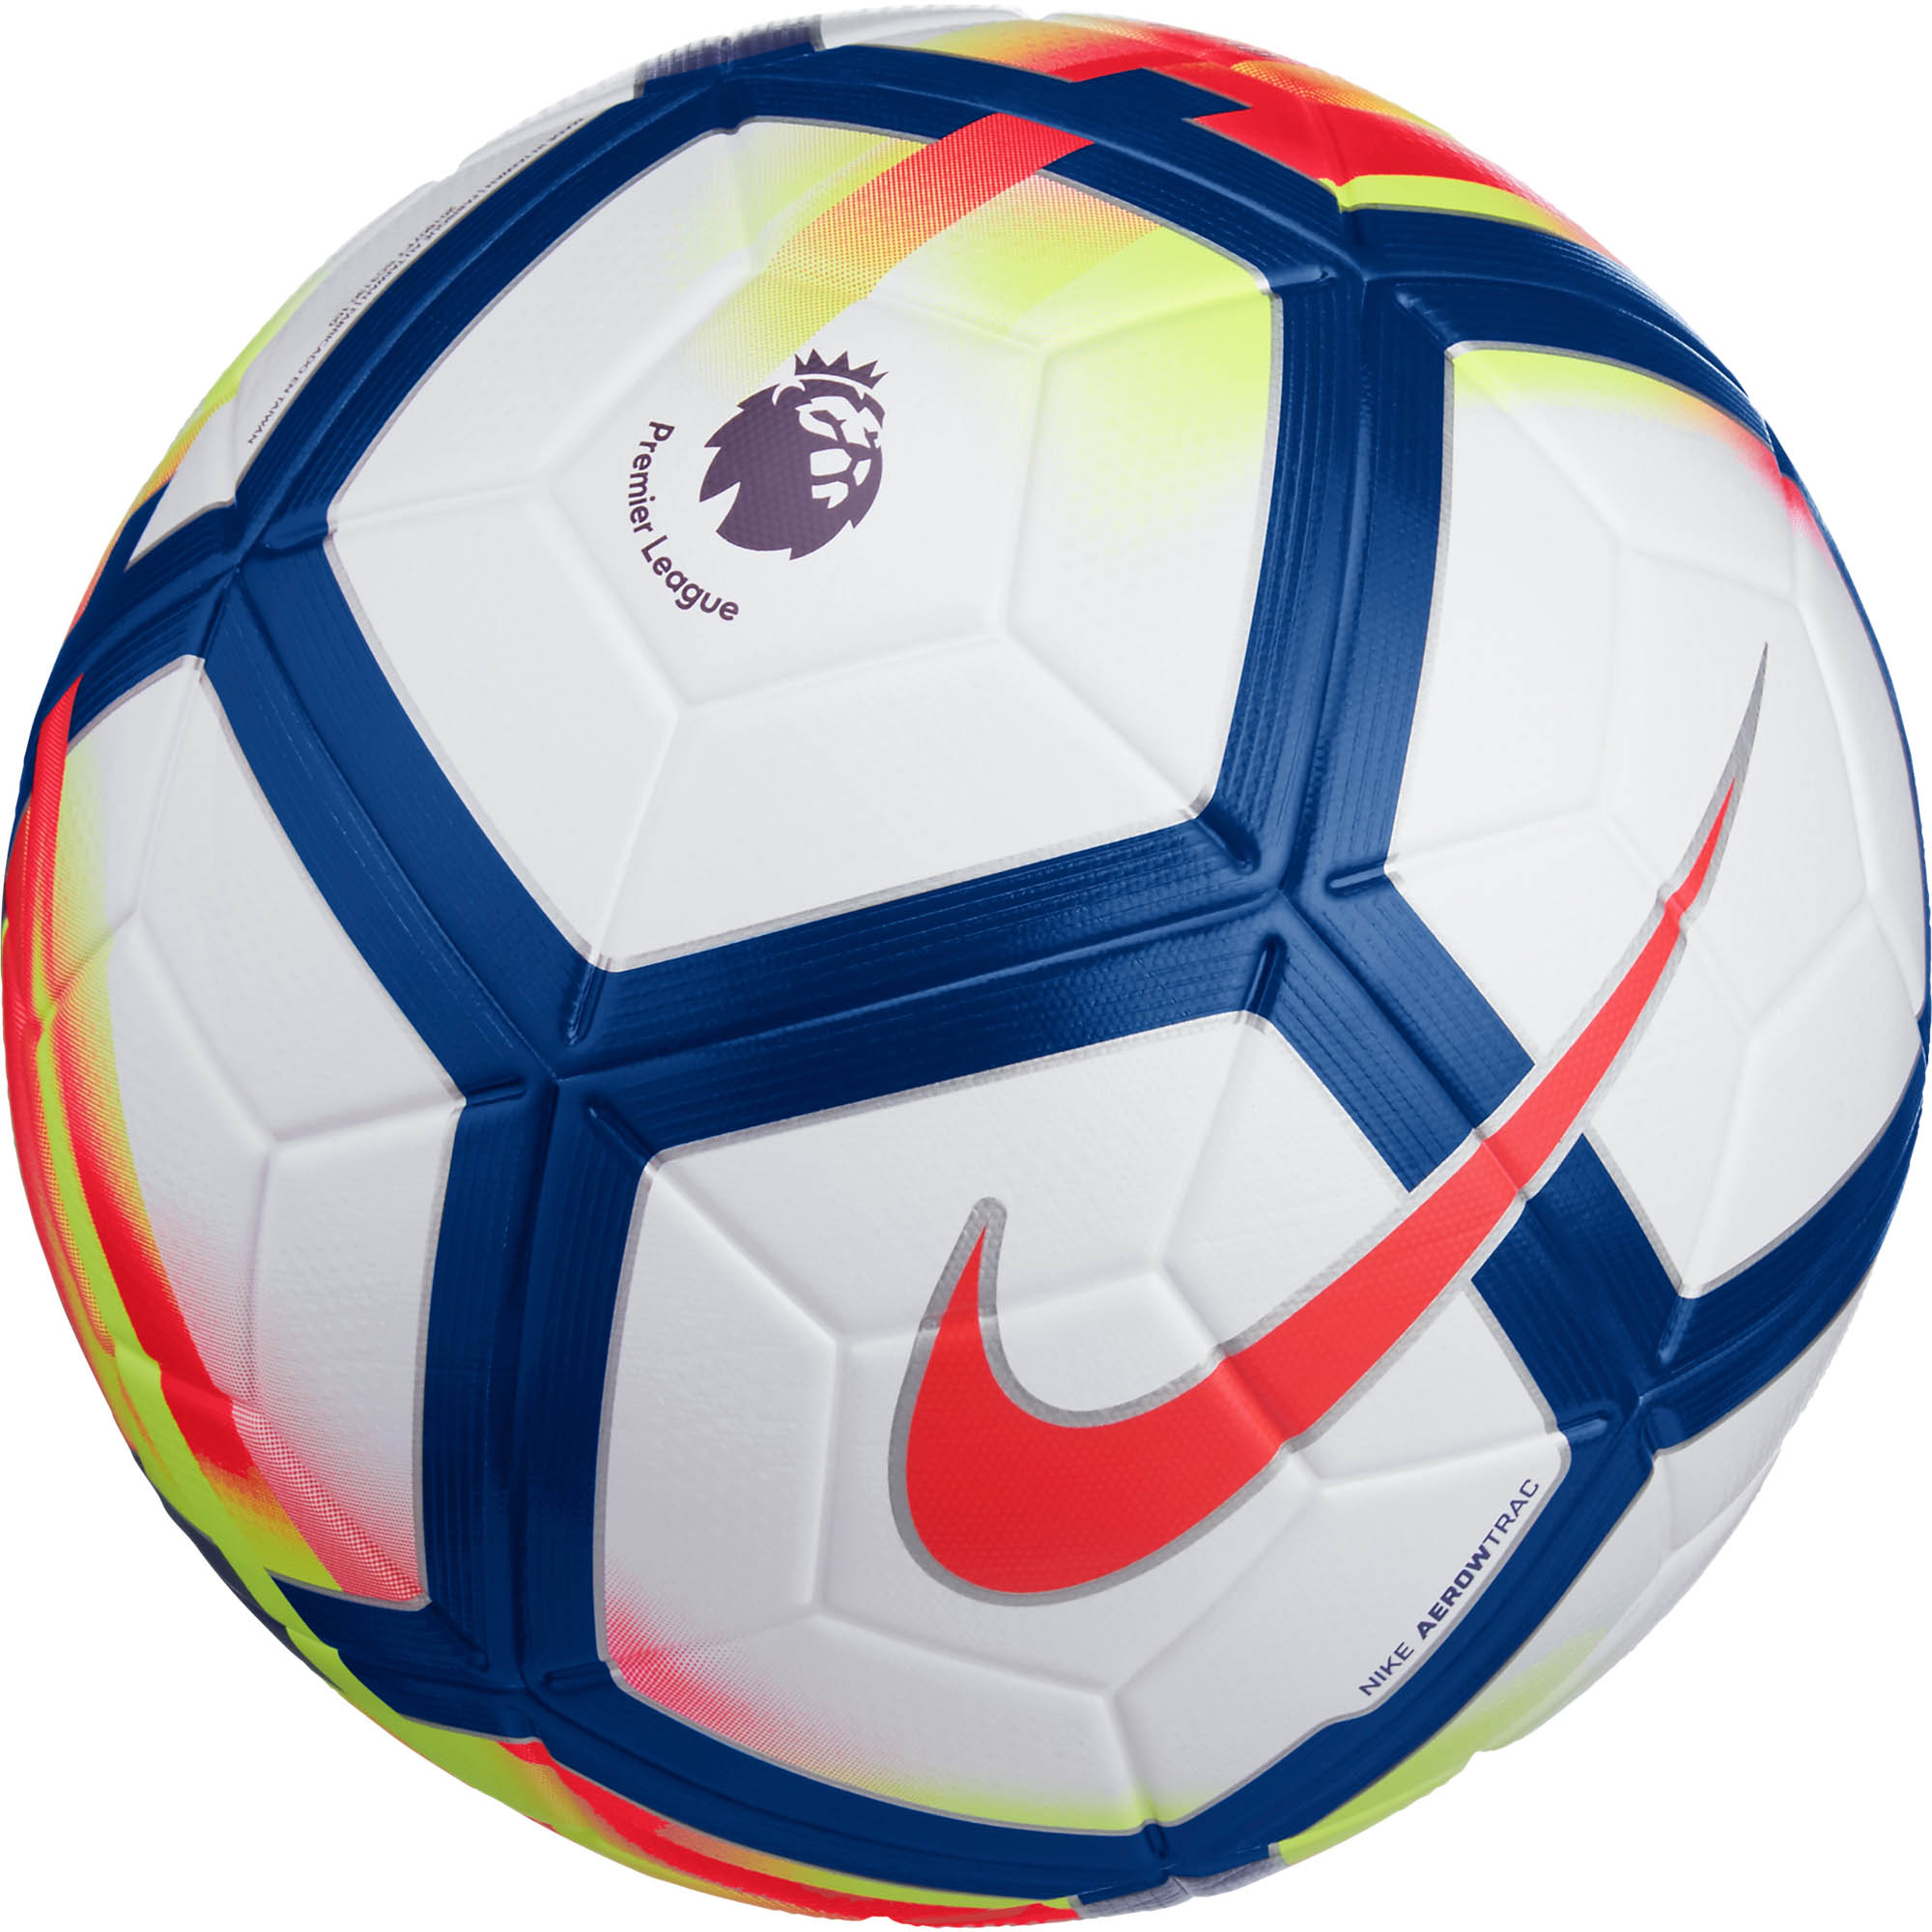 Premier League Match Soccer Ball 